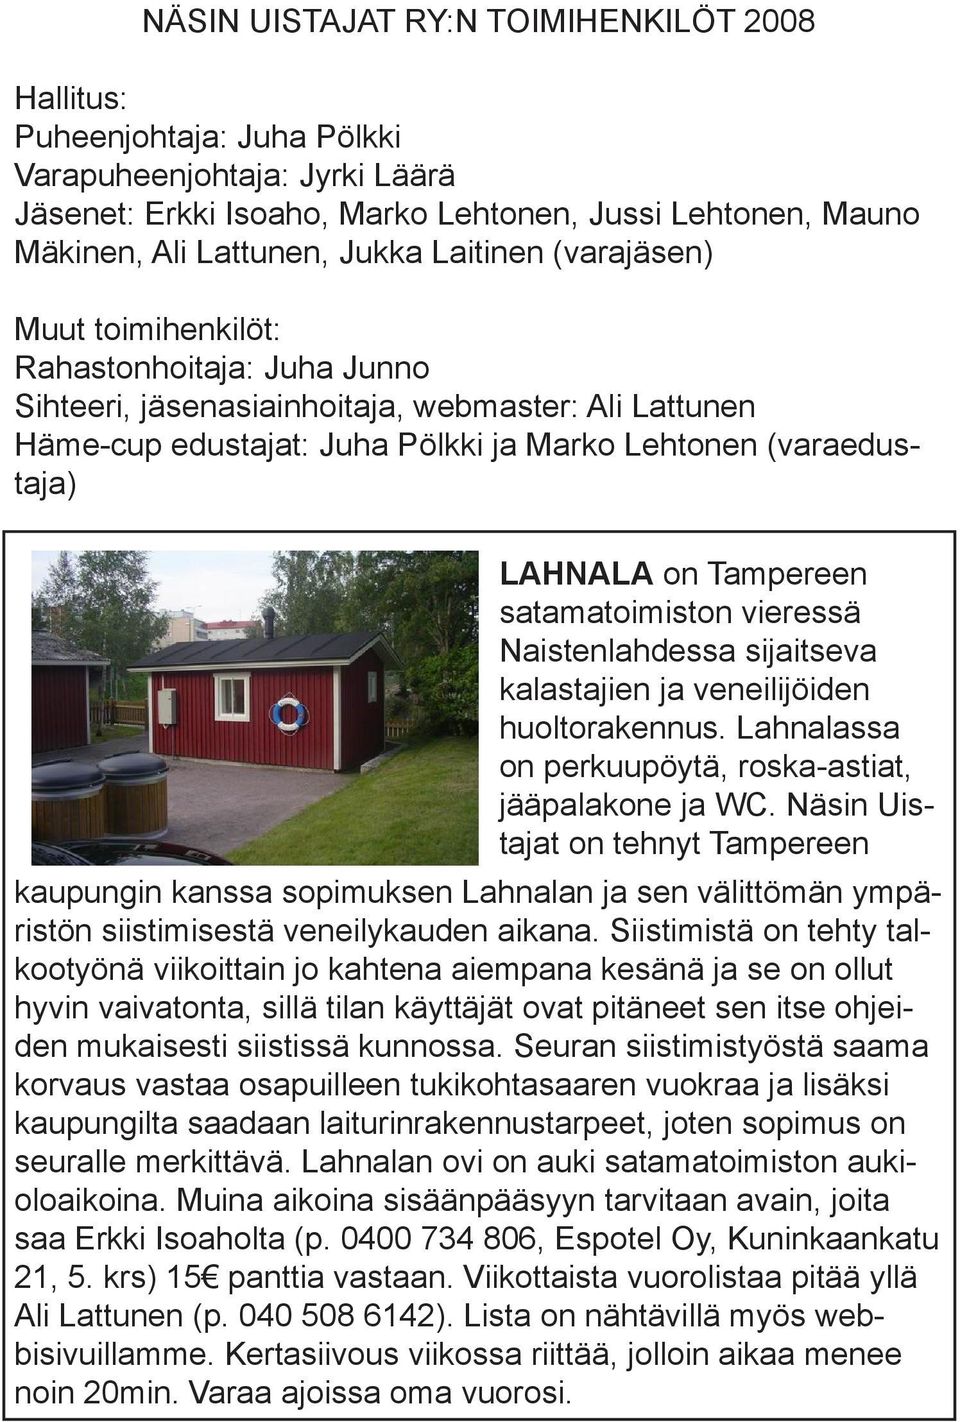 Tampereen satamatoimiston vieressä Naistenlahdessa sijaitseva kalastajien ja veneilijöiden huoltorakennus. Lahnalassa on perkuupöytä, roska-astiat, jääpalakone ja WC.